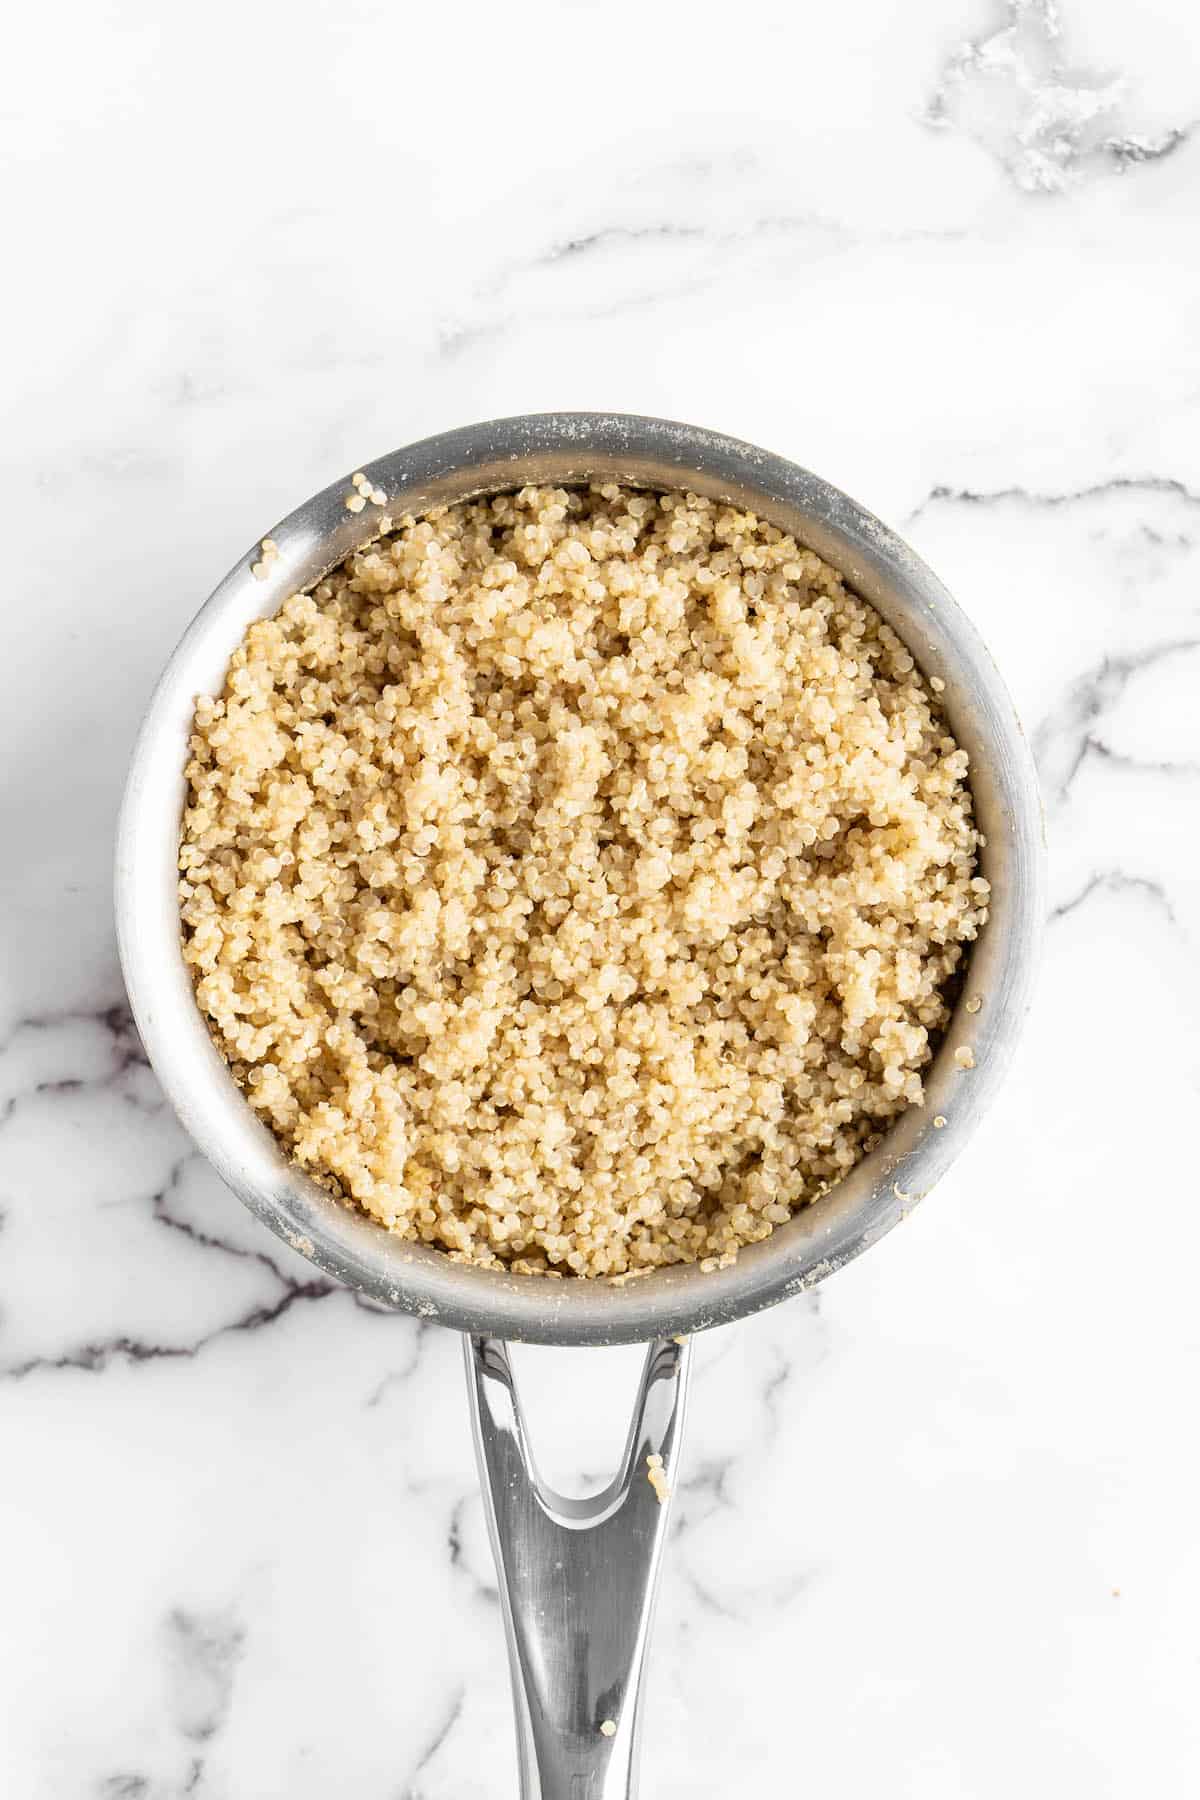 Overhead view of quinoa in pan